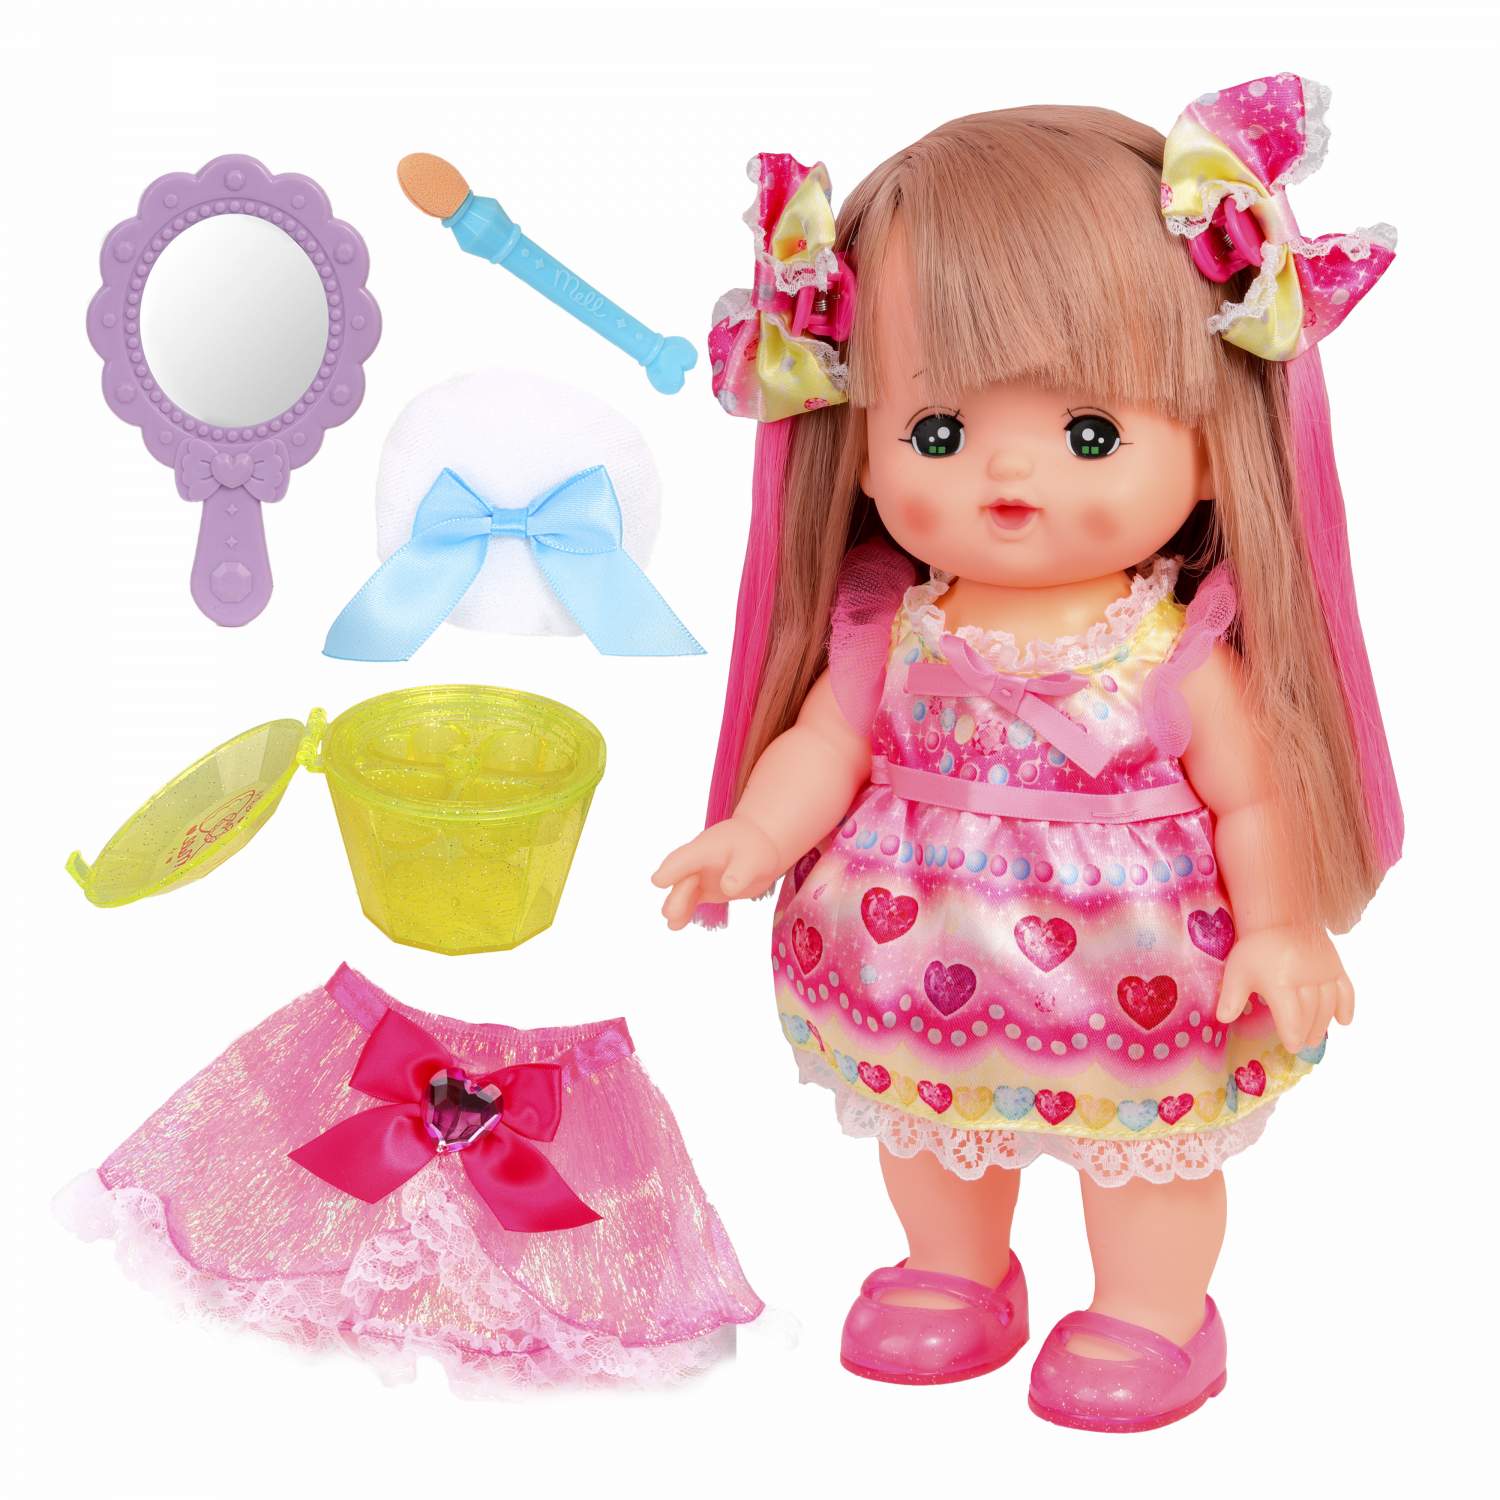 Как ухаживать за текстильными куклами и игрушками